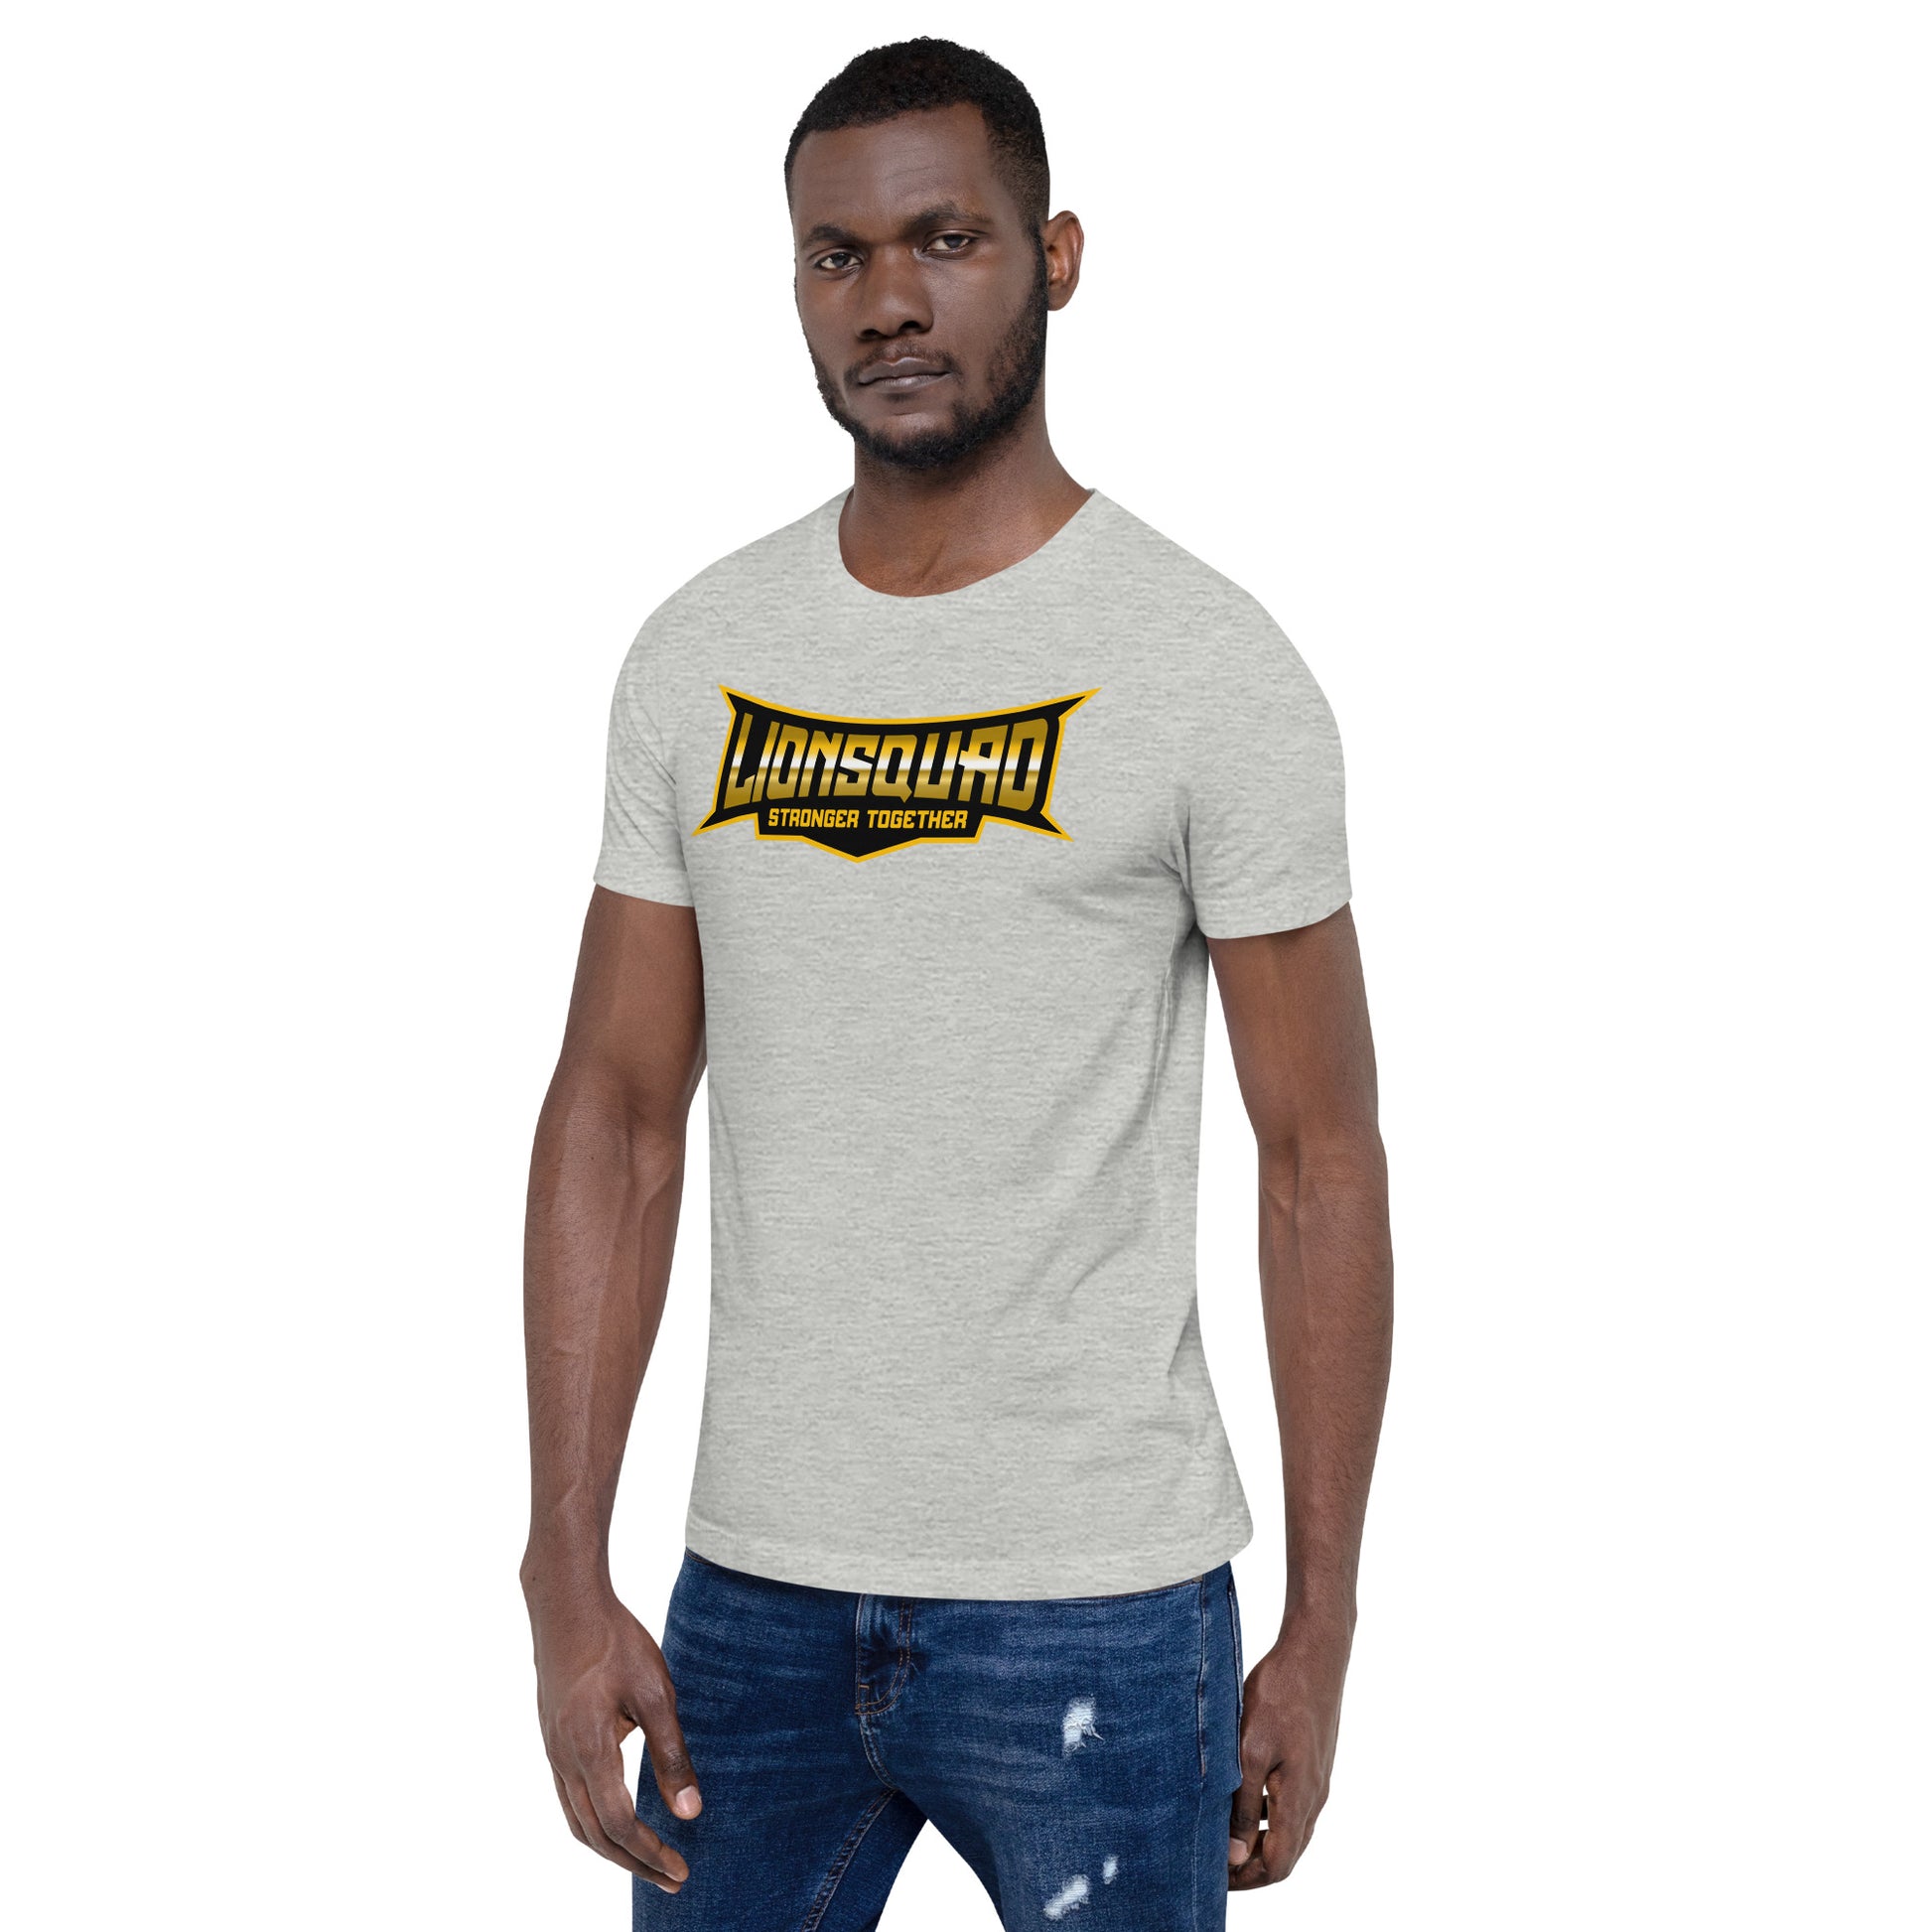 TheSquad Unisex t-shirt - LionSquad